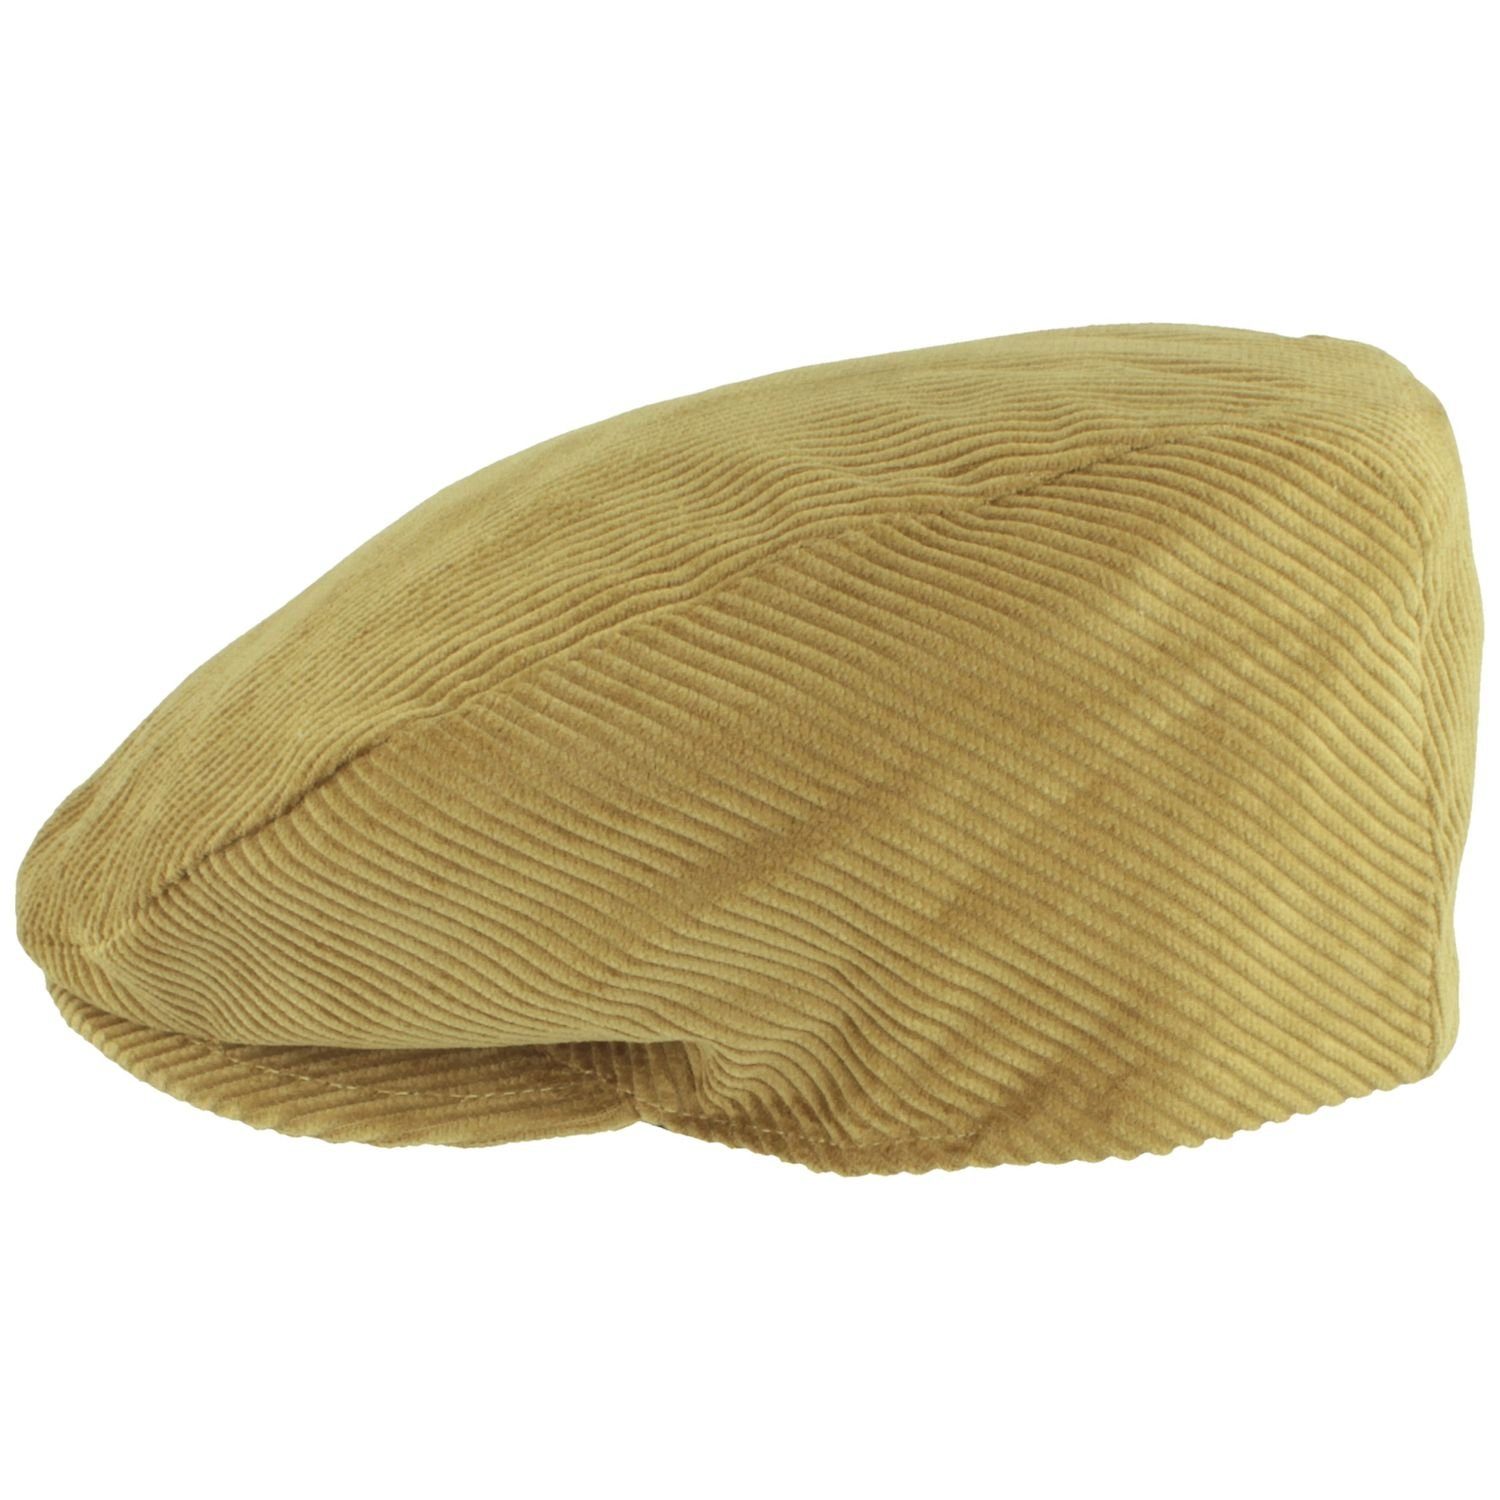 Breiter Schiebermütze Flatcap aus mit Baumwolle Cord-Streifen camel